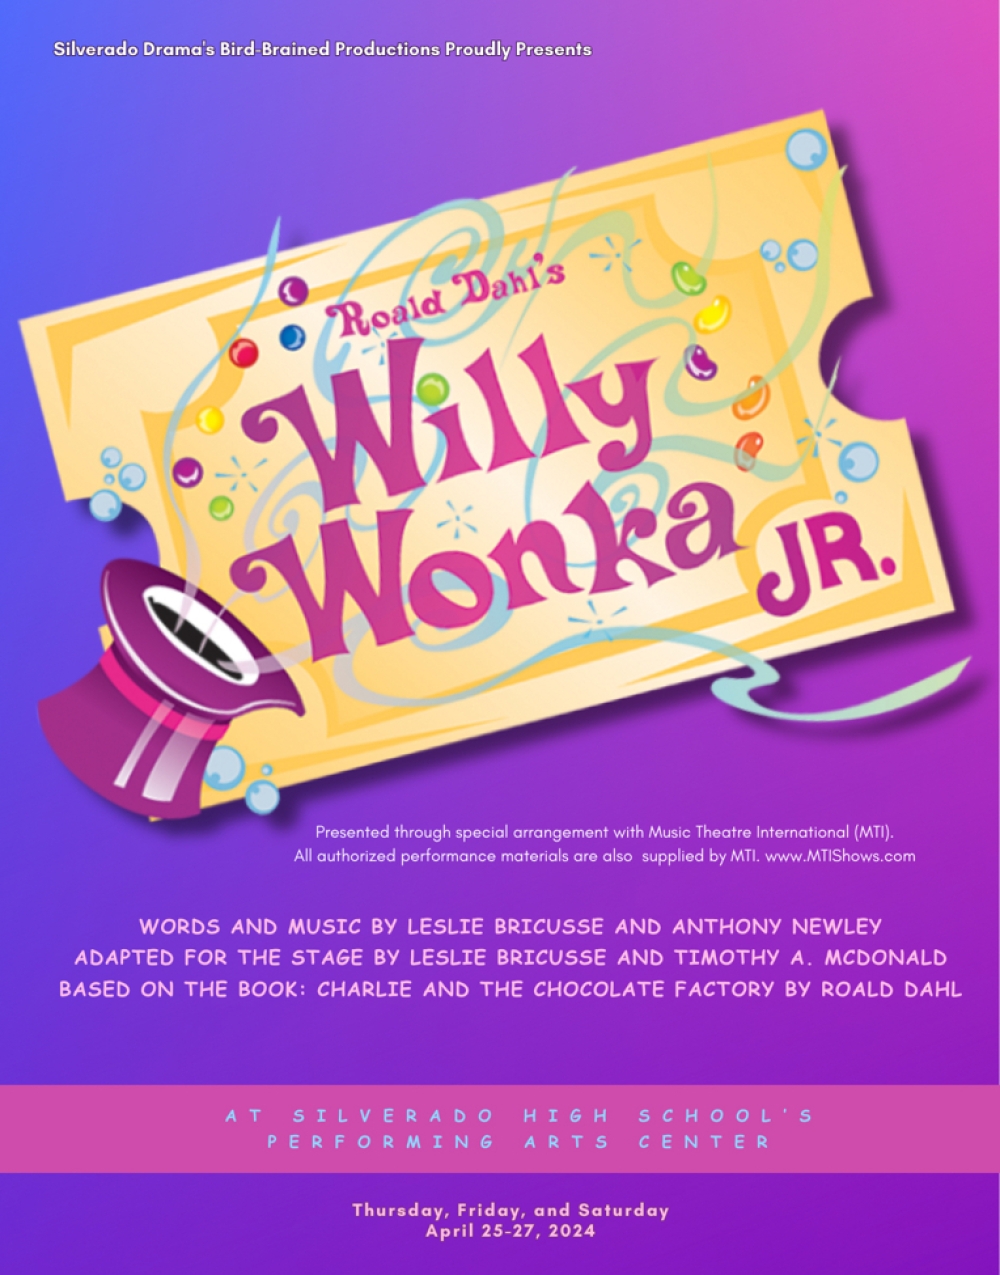 Roald Dahl's Willy Wonka Jr. at Silverado High School's Performing Arts Center